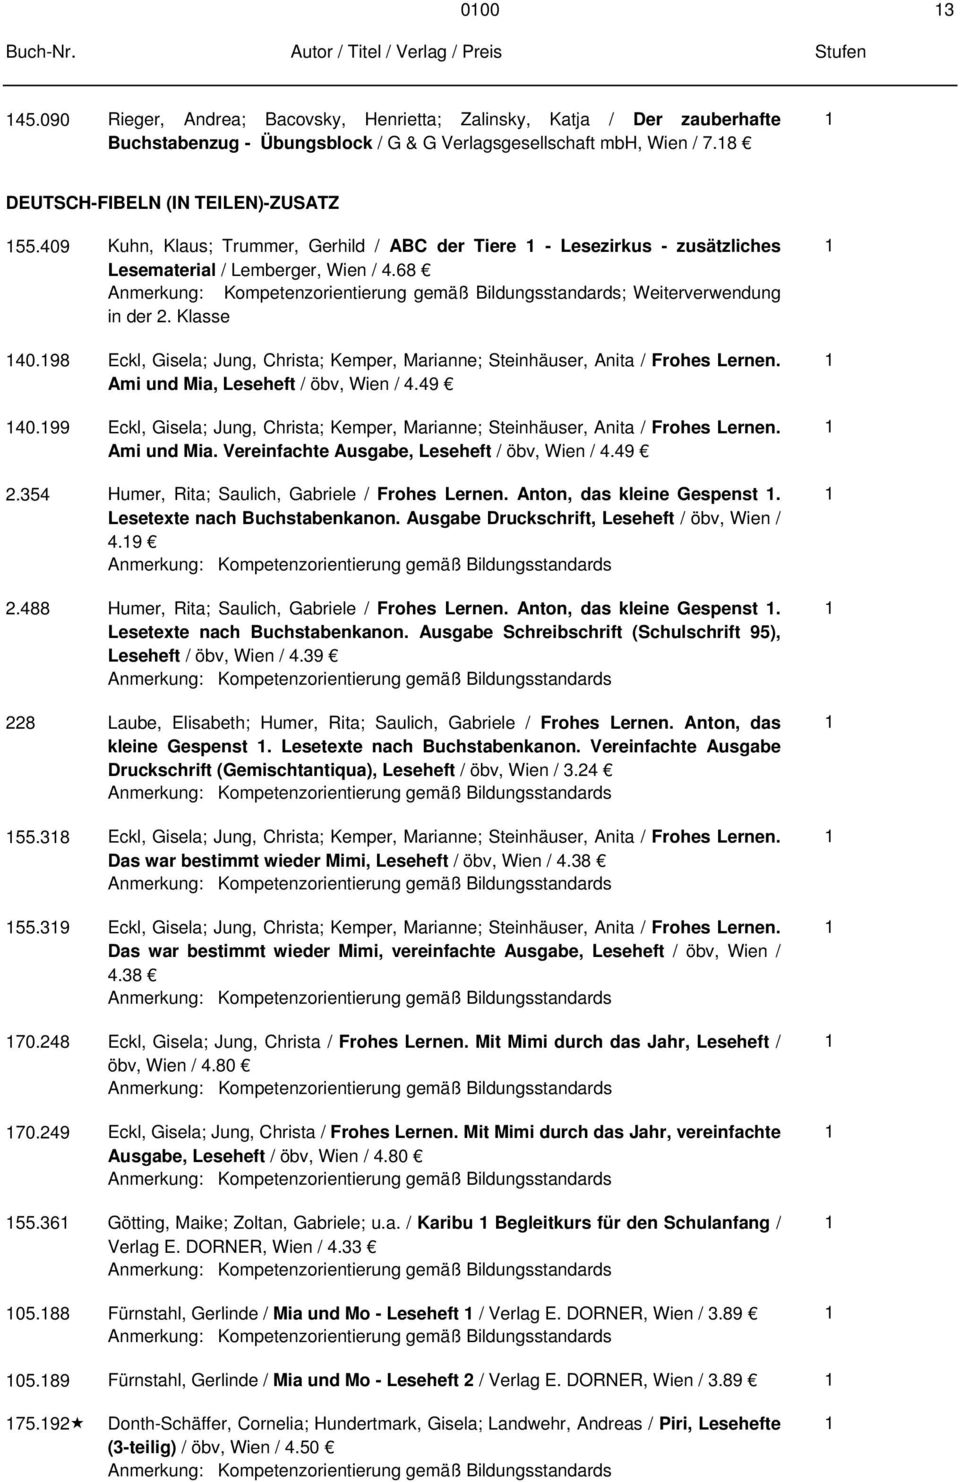 98 Eckl, Gisela; Jung, Christa; Kemper, Marianne; Steinhäuser, Anita / Frohes Lernen. Ami und Mia, Leseheft / öbv, Wien /.9 0.